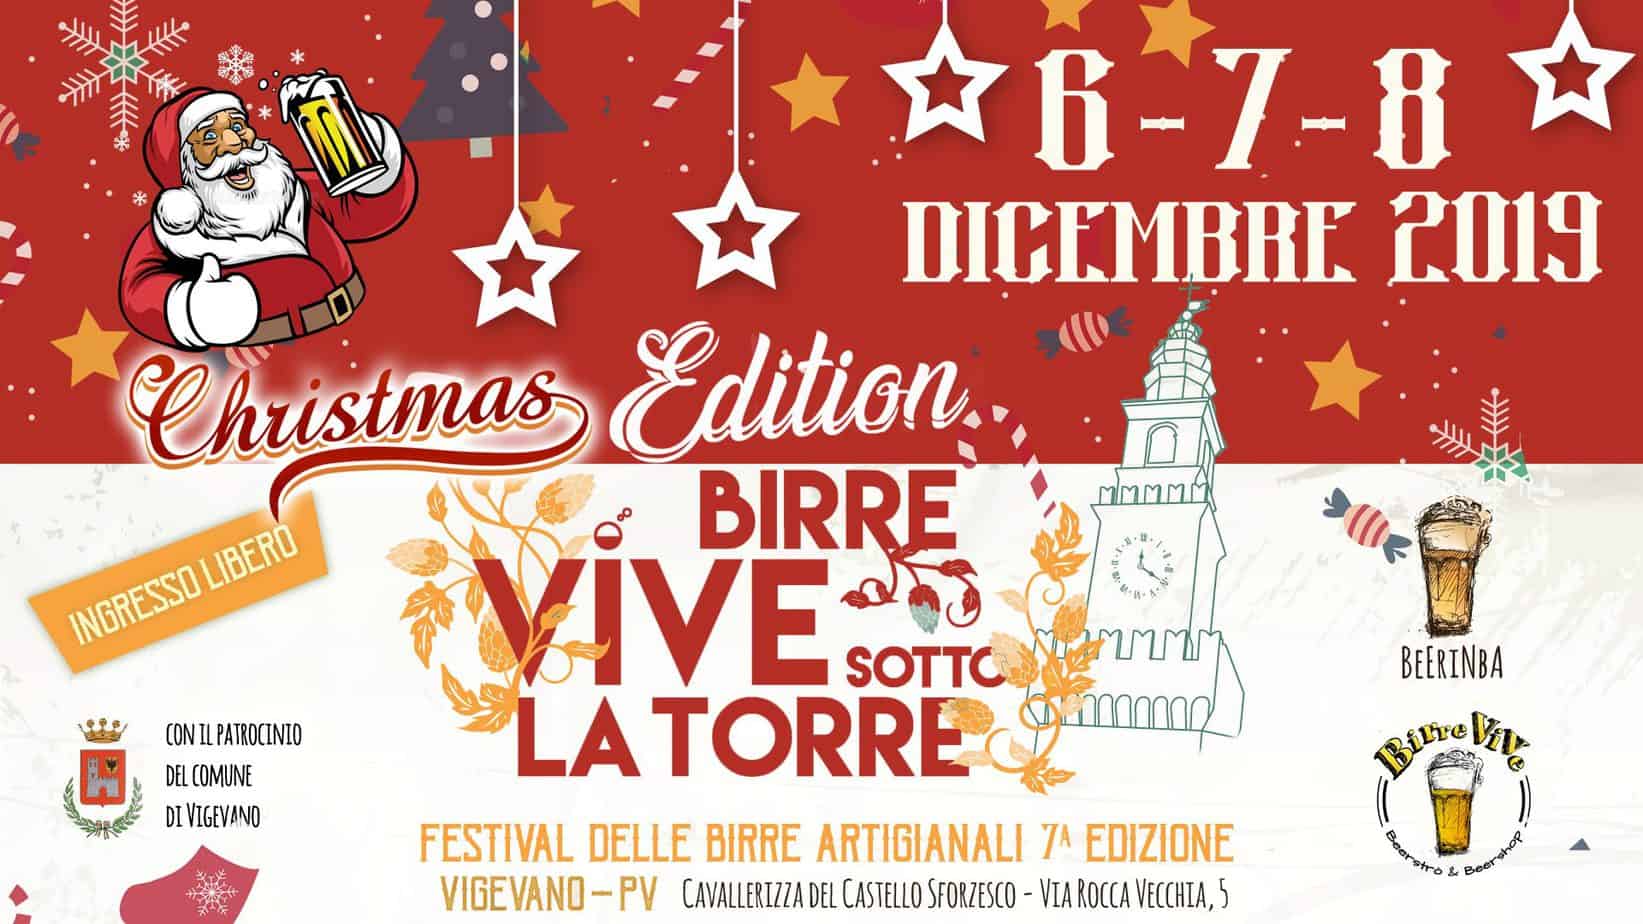 Birre Vive sotto la torre Christmas edition  a Vigevano